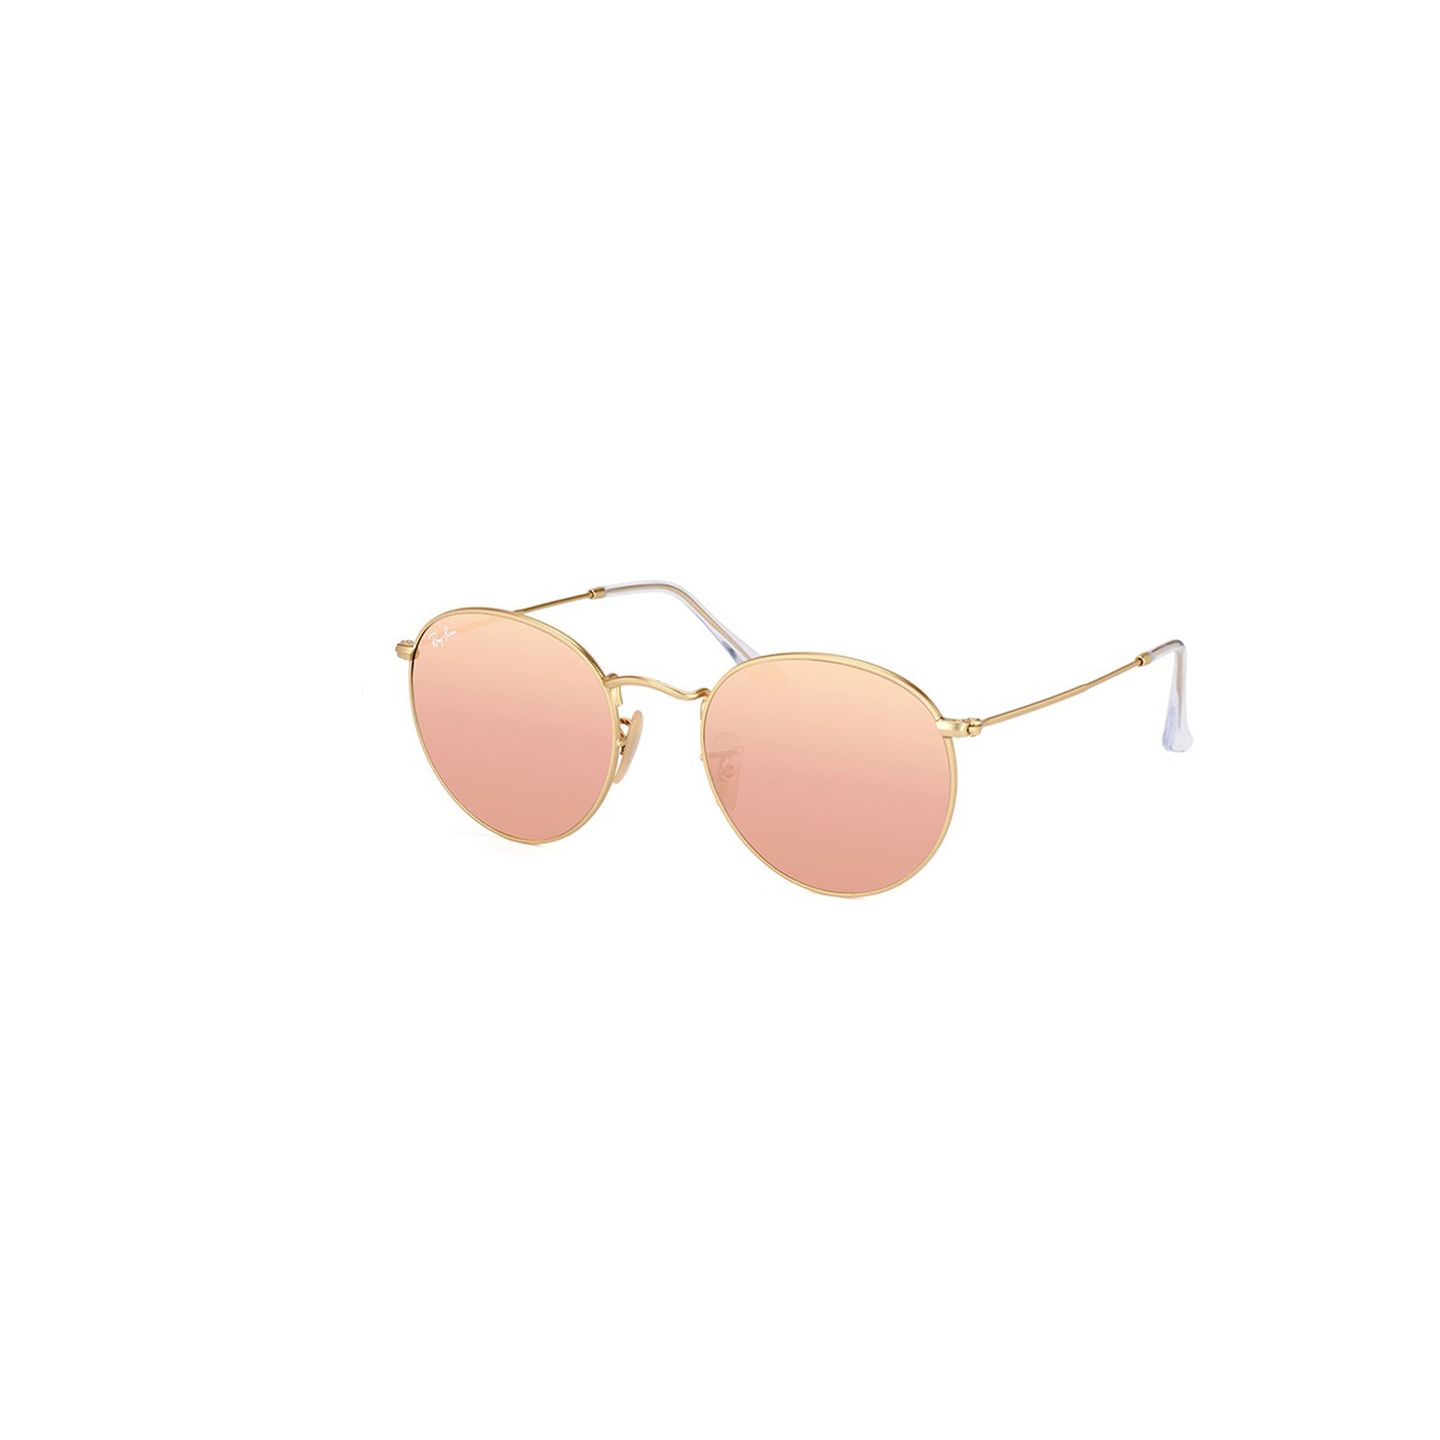 Sonnenbrille mit farbigen verspiegelten Gläsern. Von Ray Ban, erhältlich zum Beispiel über MisterSpex, um 146 Euro.